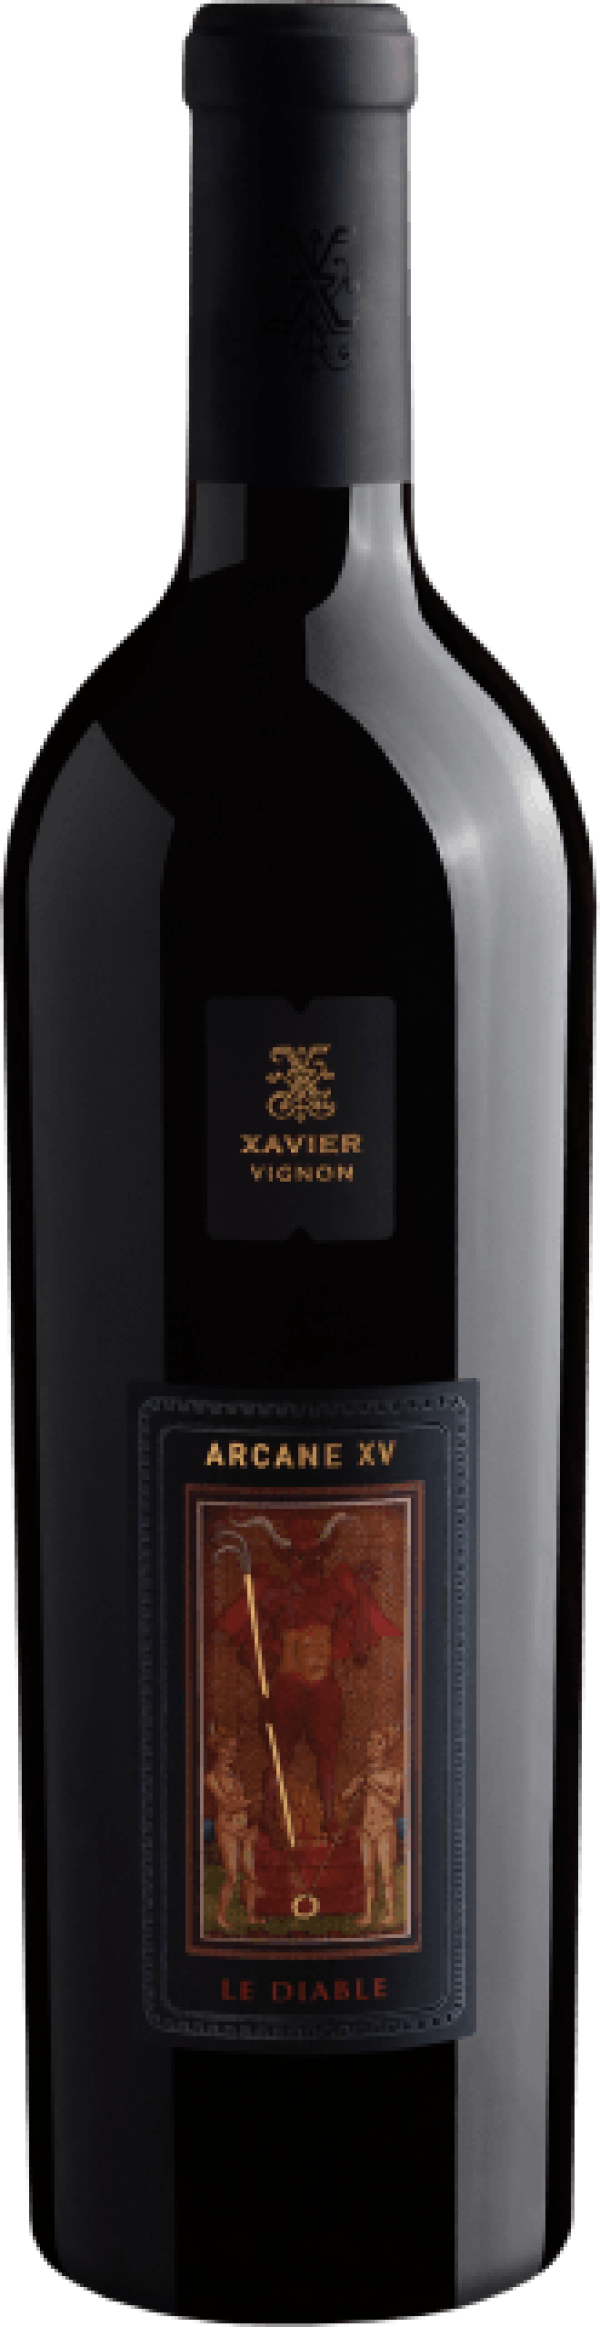 Xavier Vignon Arcane XV Le Diable 2015